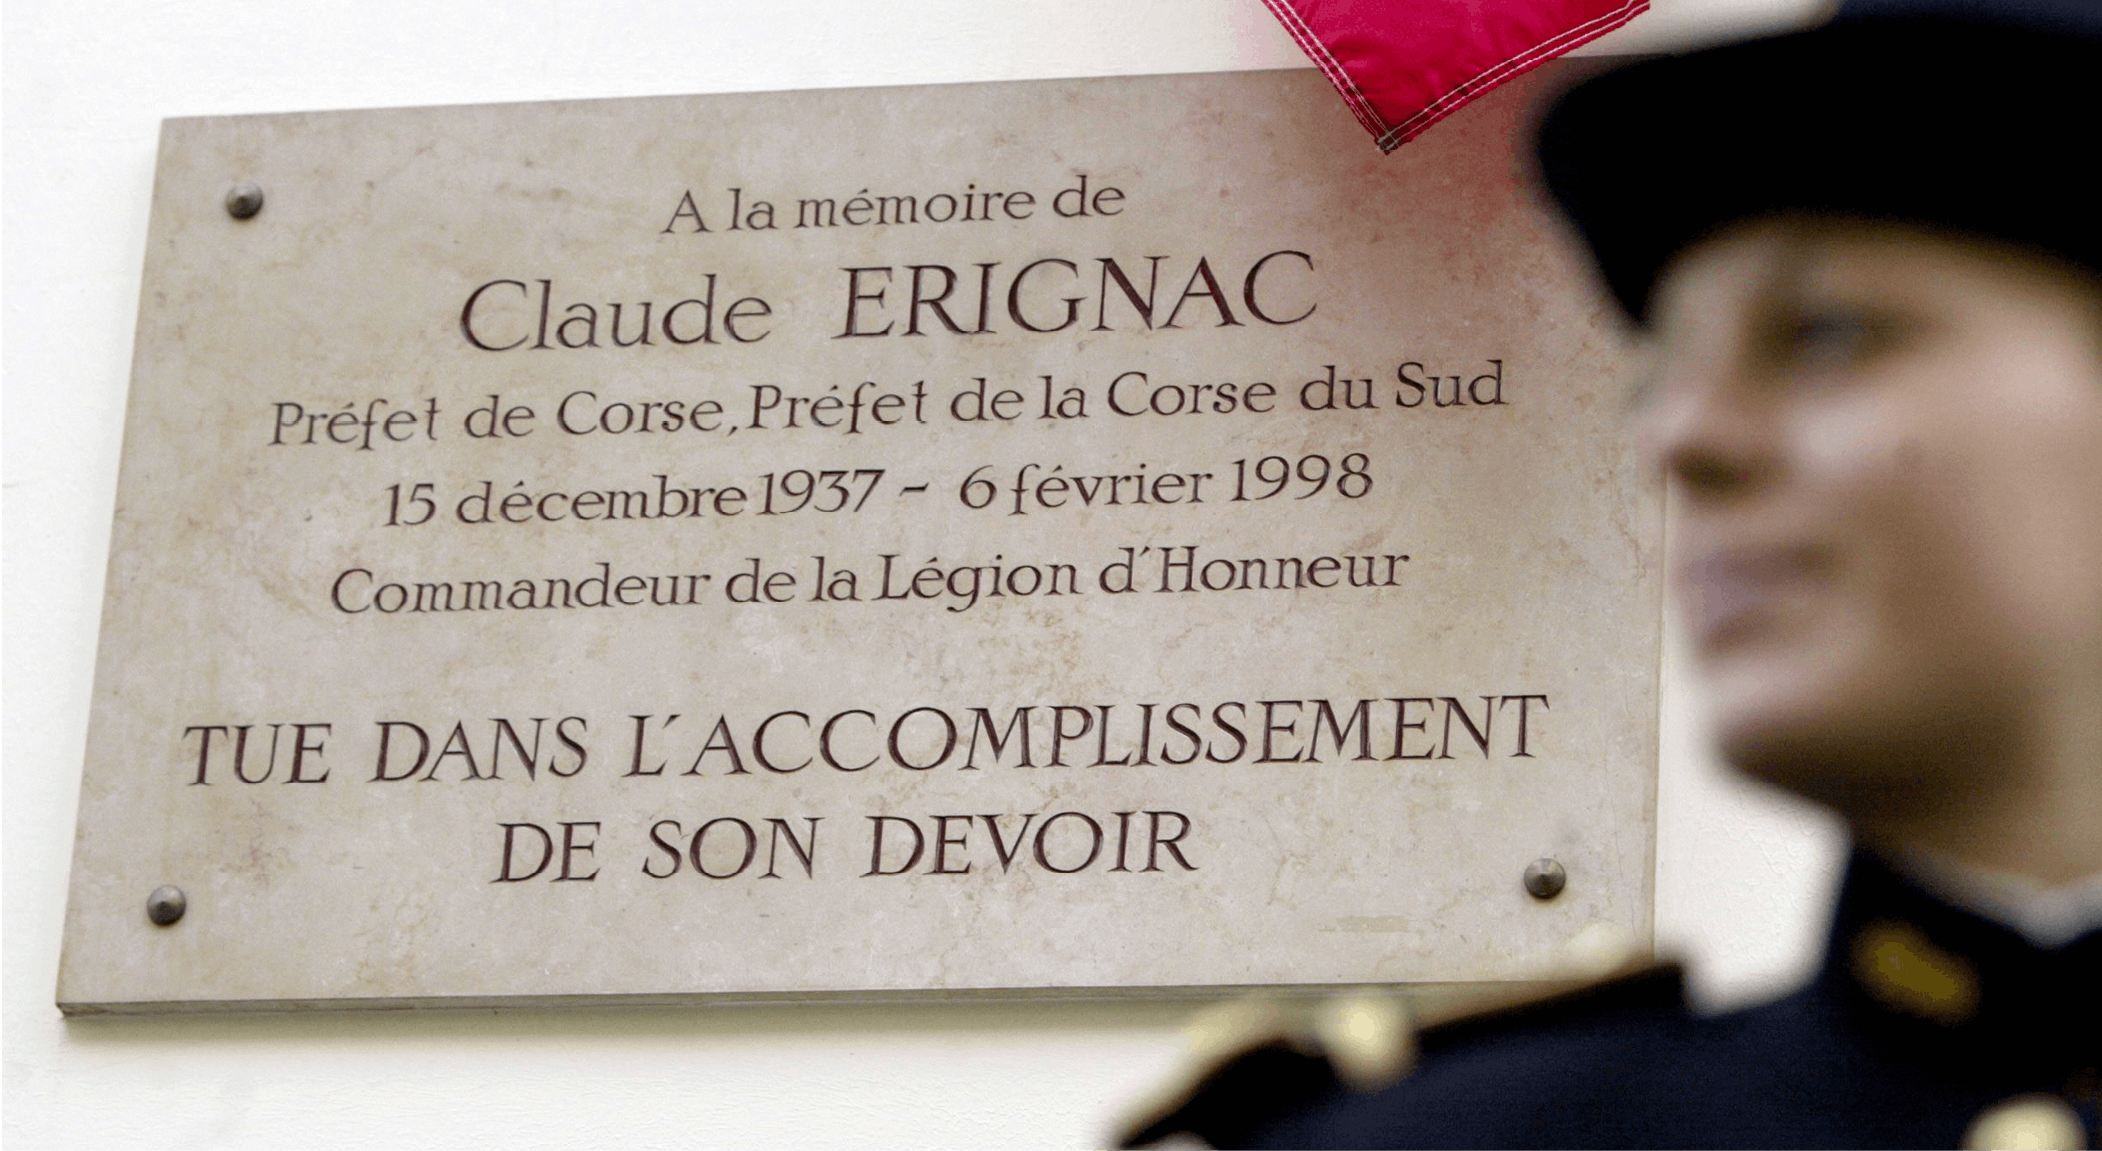 Photographie de la plaque à la mémoire du préfet de Corse Claude Érignac